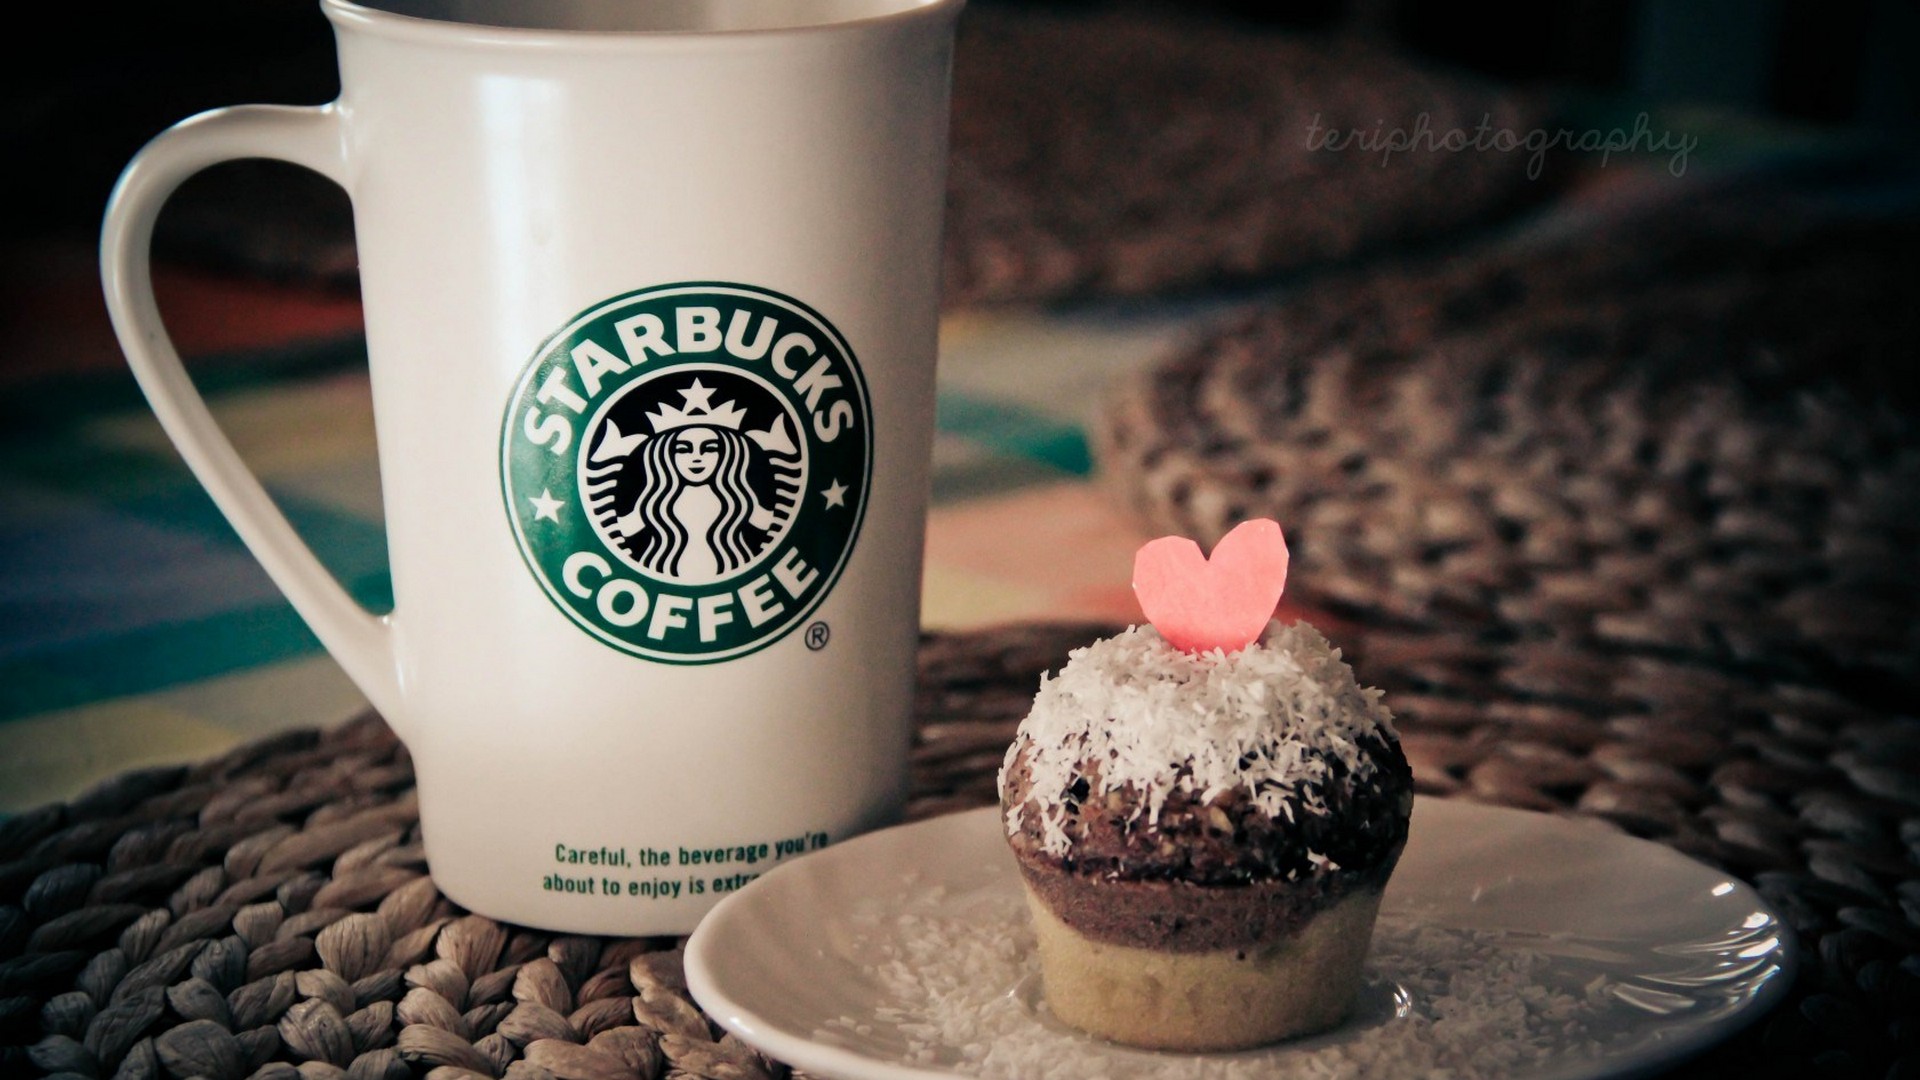 Cute Starbucks Wallpaper Mug Cup Cake